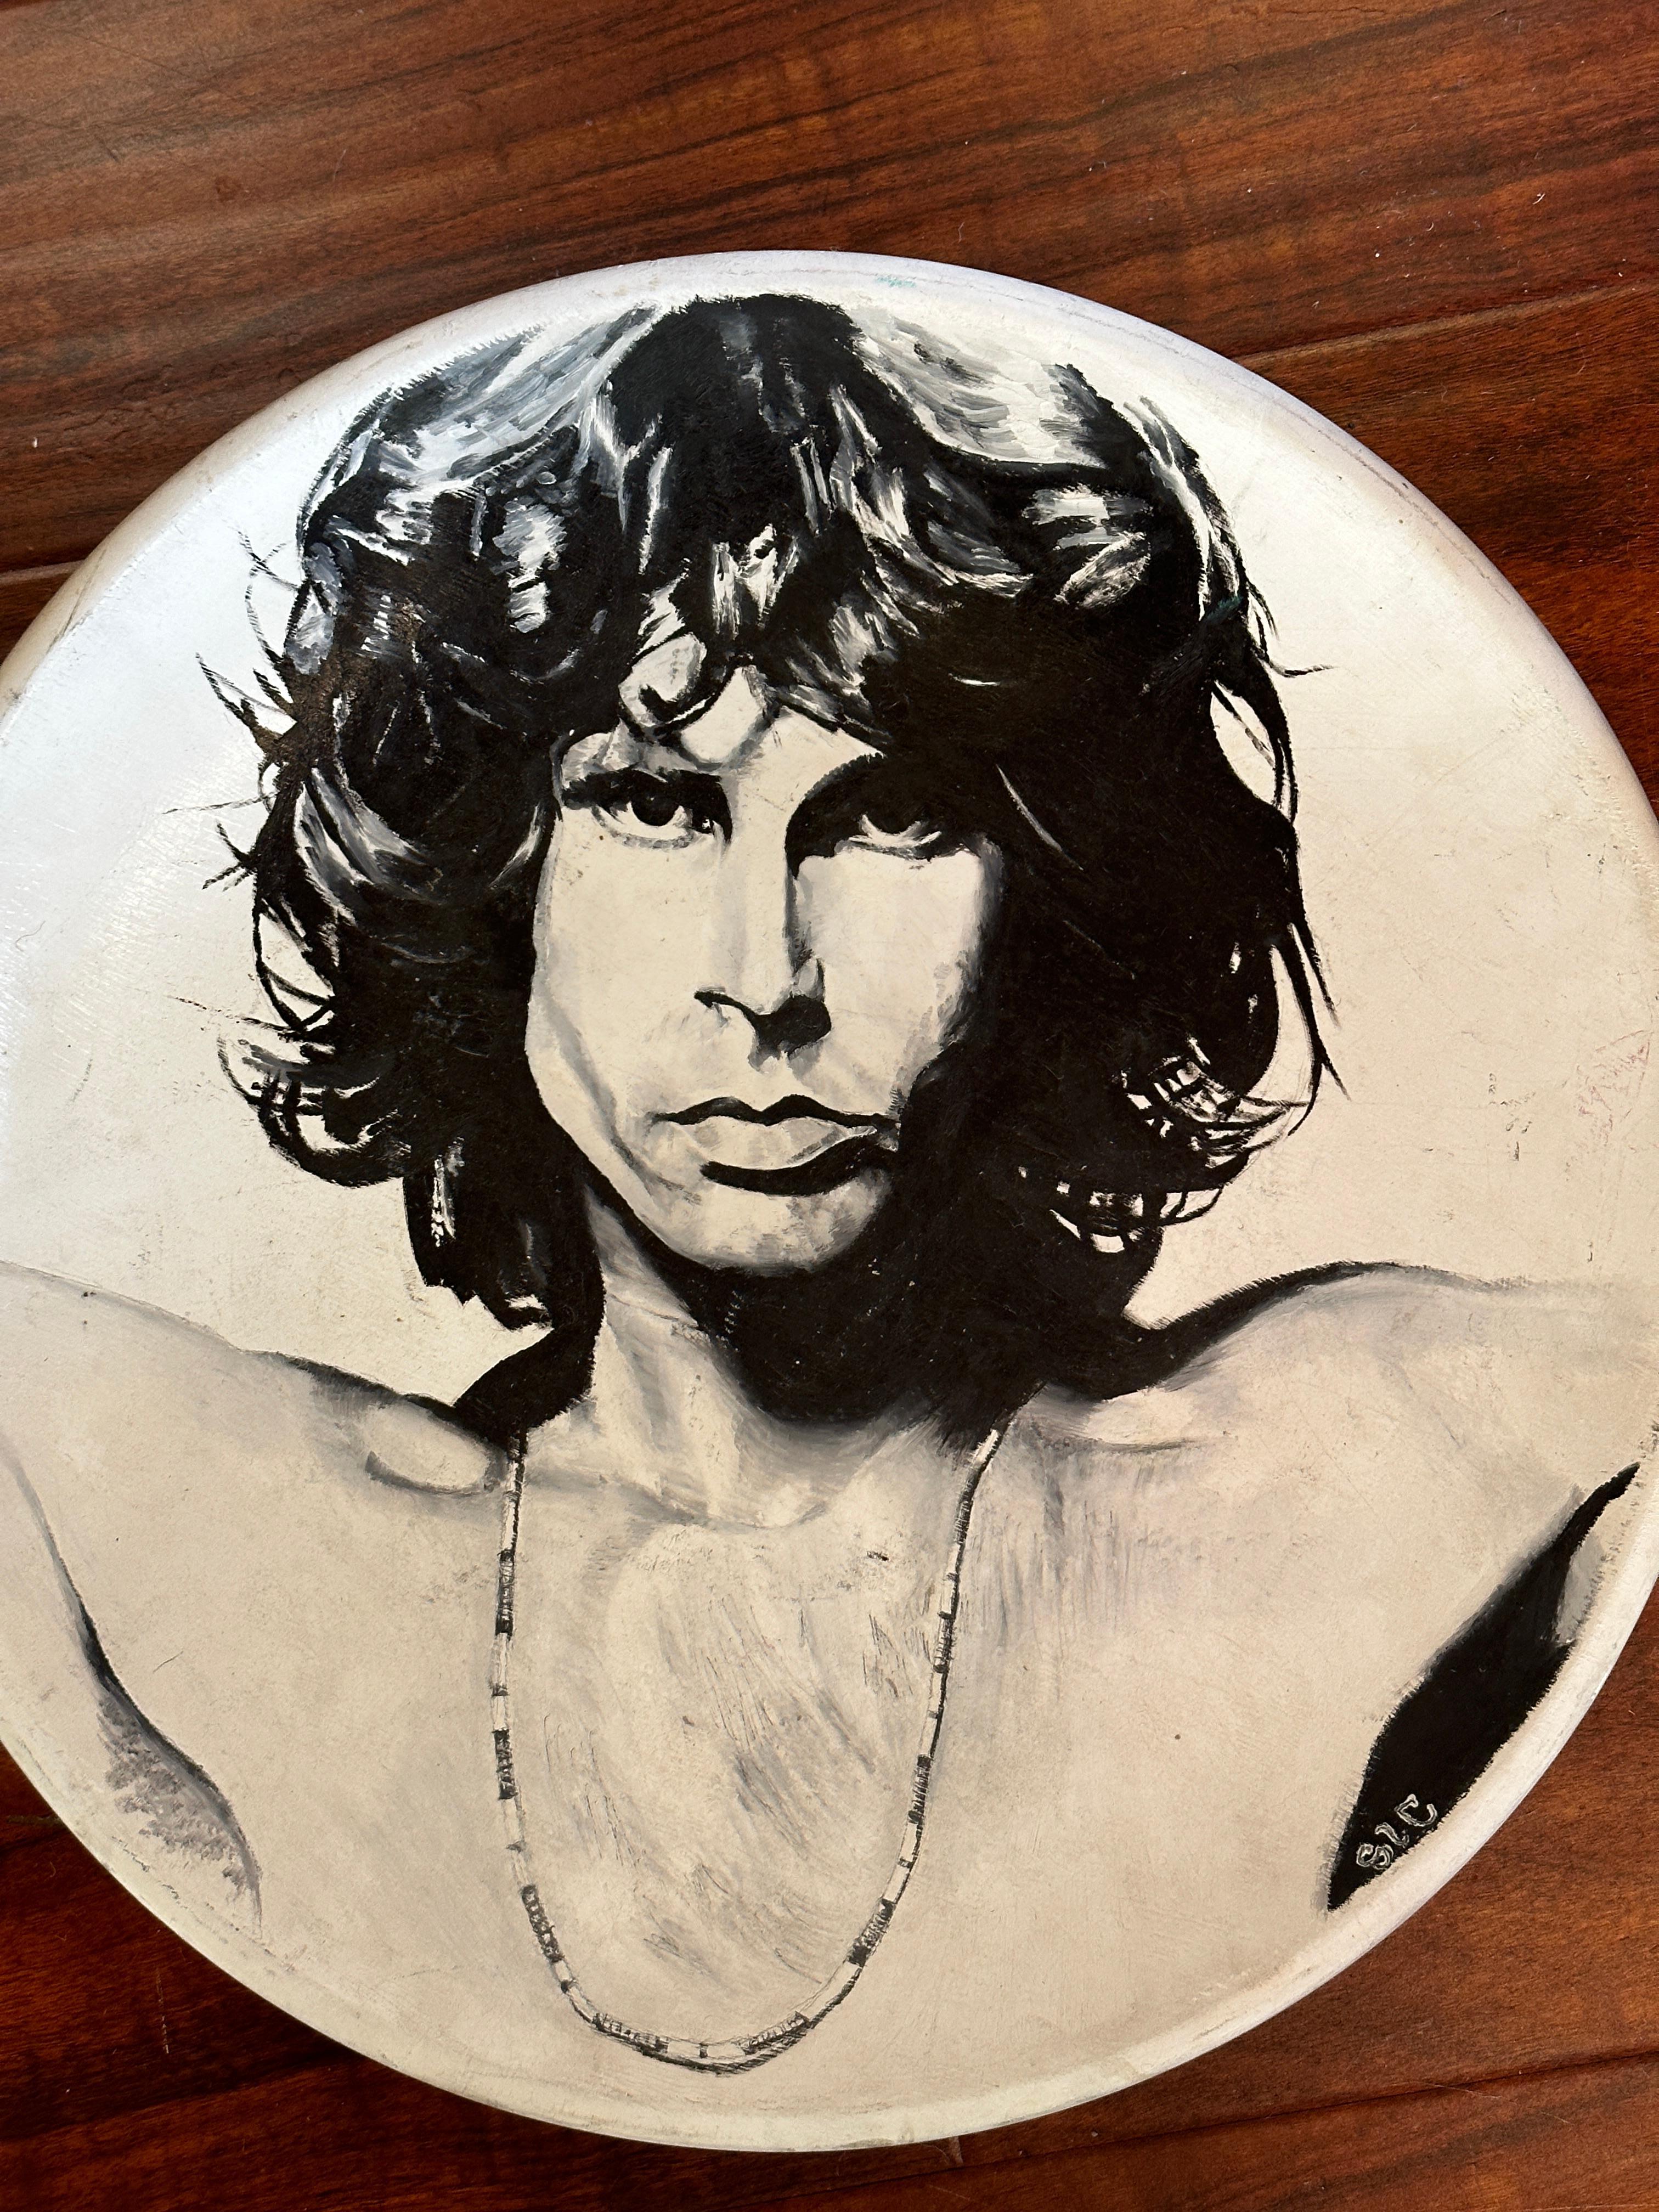 Dieser mit Acrylfarbe bemalte Keramikteller zeigt eine Reproduktion eines der ikonischen Porträts von Jim Morrison des Fotografen Joel Brodsky. Der Künstler stellt Morrisons markante Gesichtszüge originalgetreu dar, seinen intensiven Blick, sein